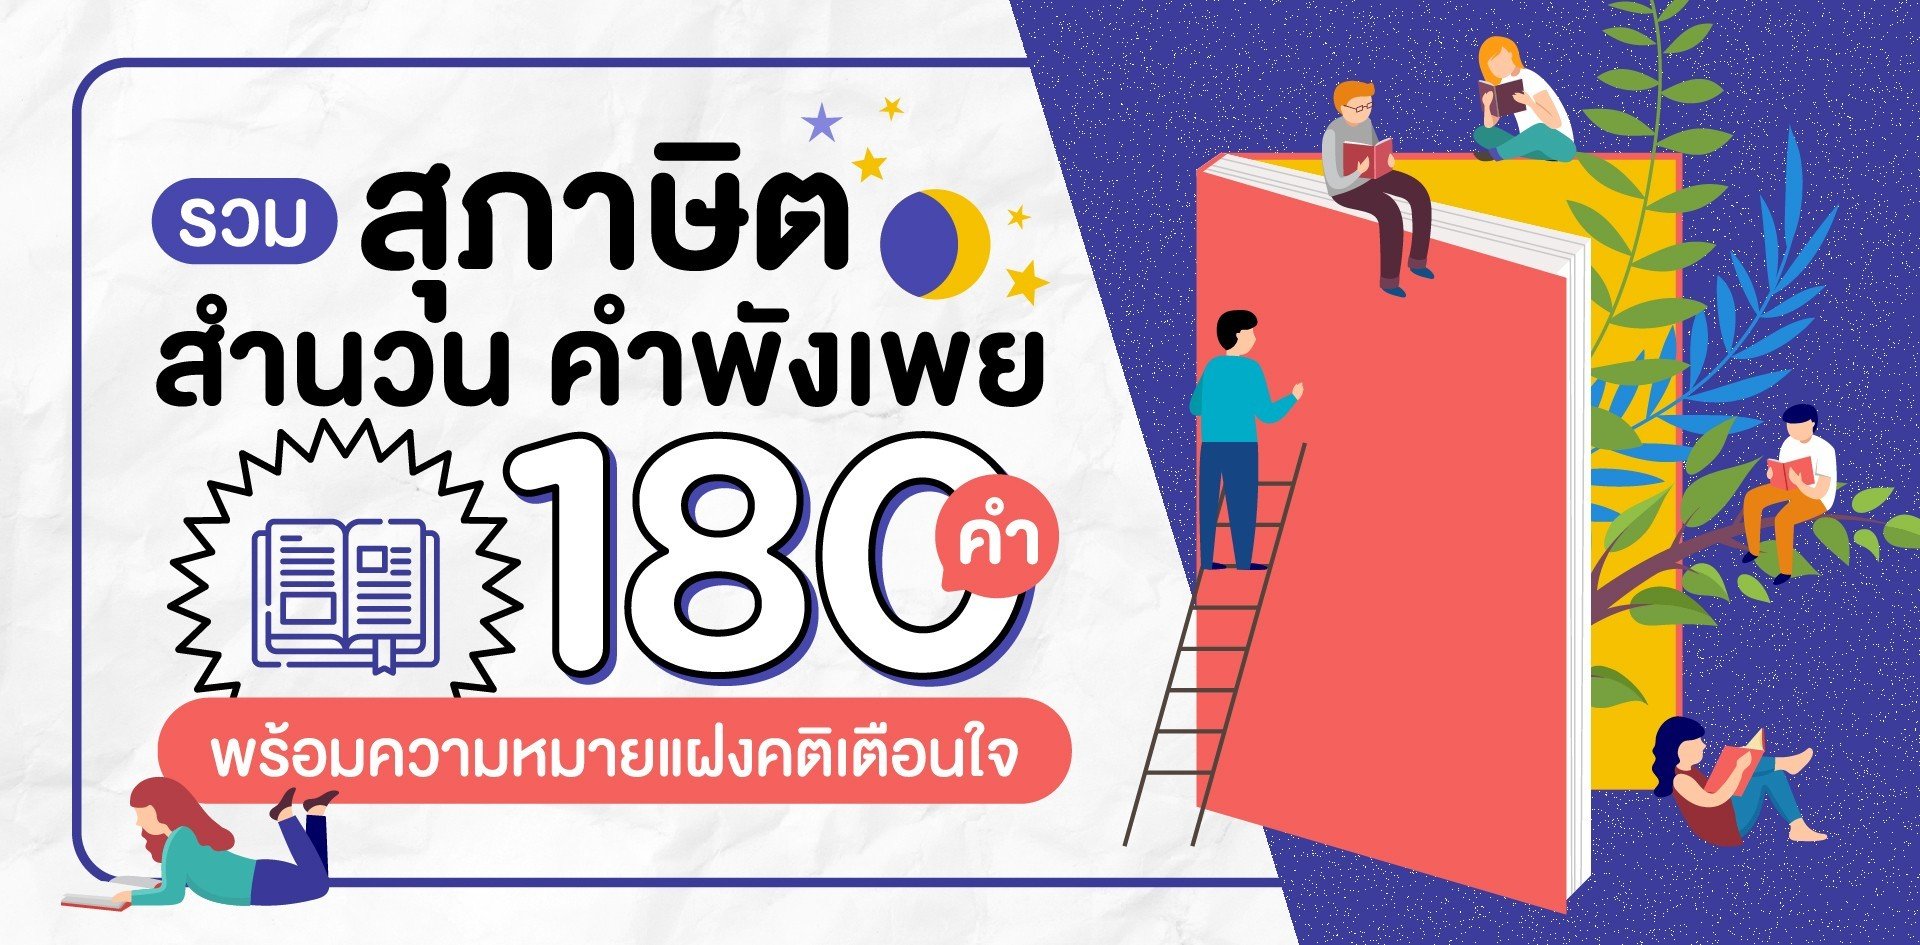 180 สุภาษิต สำนวนไทย คำพังเพย พร้อมความหมายคติเตือนใจ